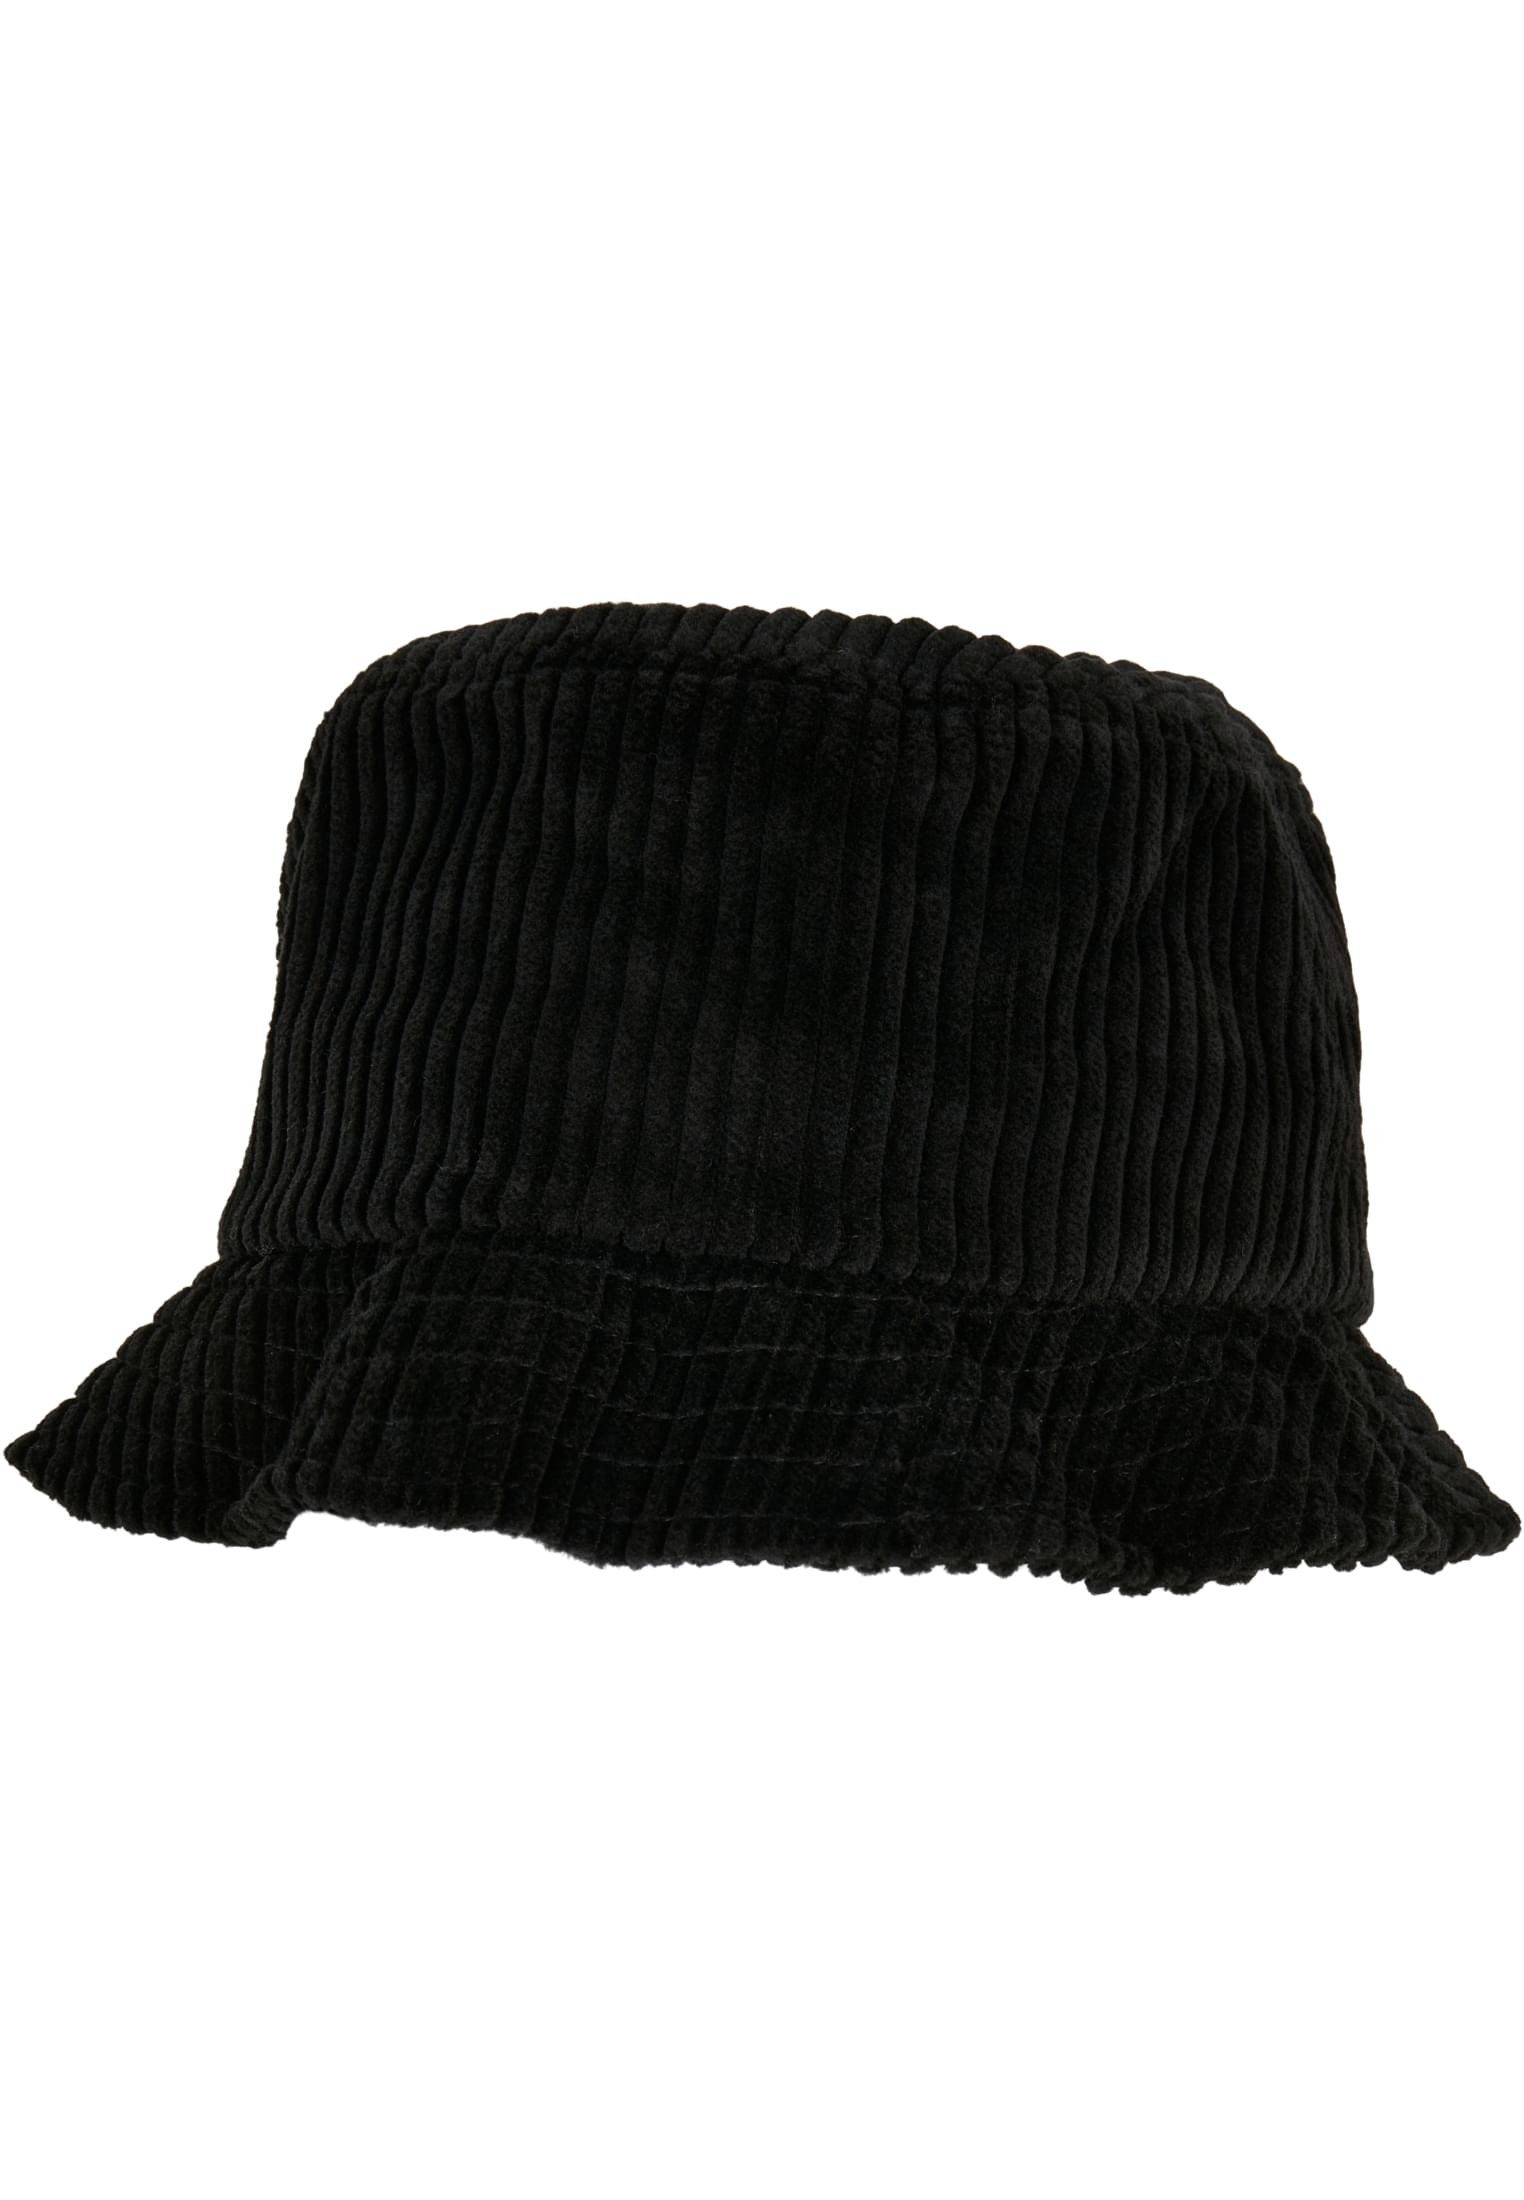 Accessoires Hat Flex black Bucket Corduroy Big Flexfit Cap